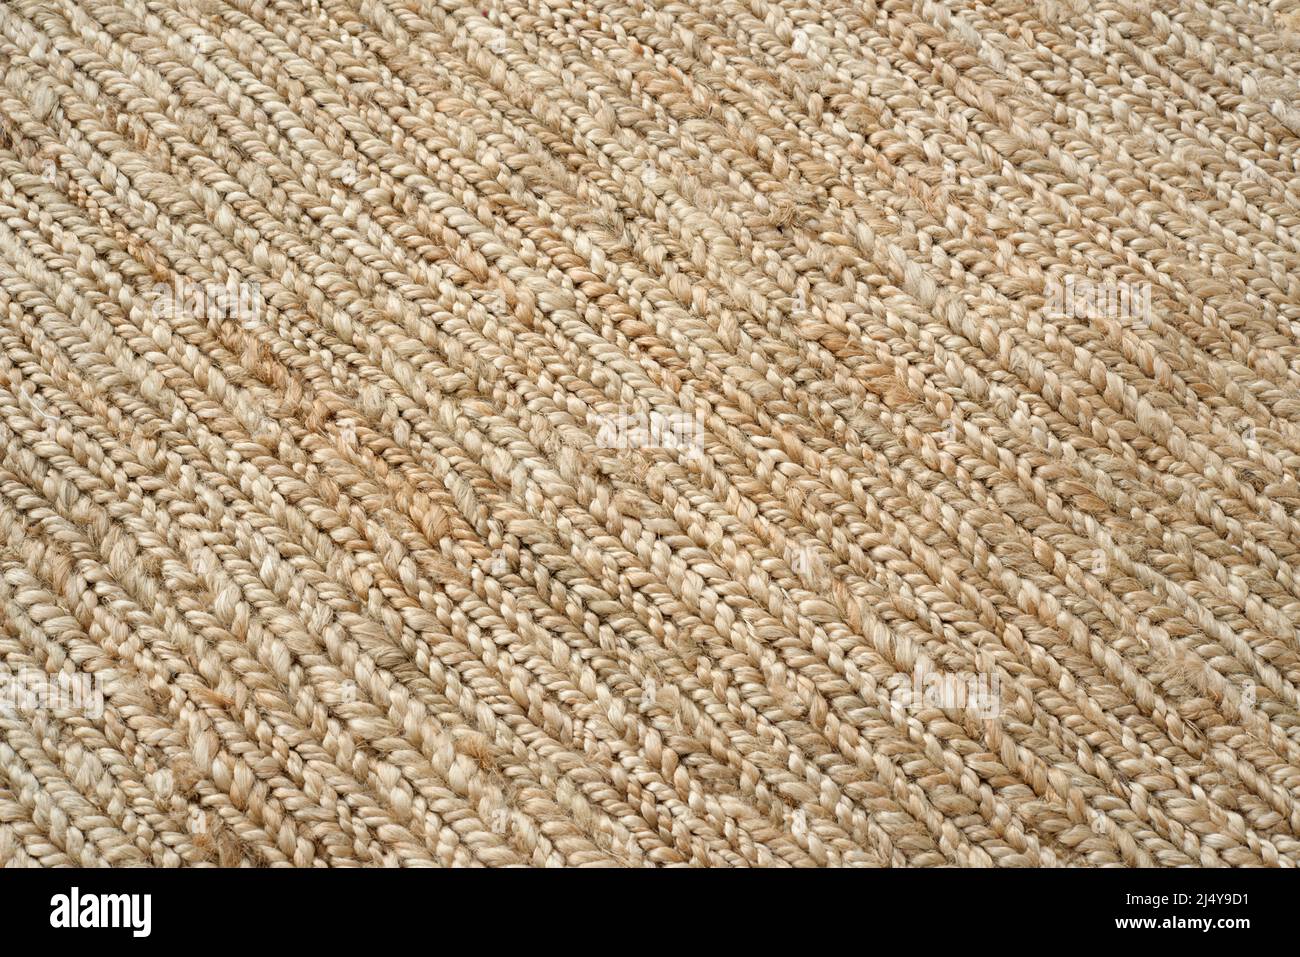 Natural coir fibres made into a floor covering. Stock Photo